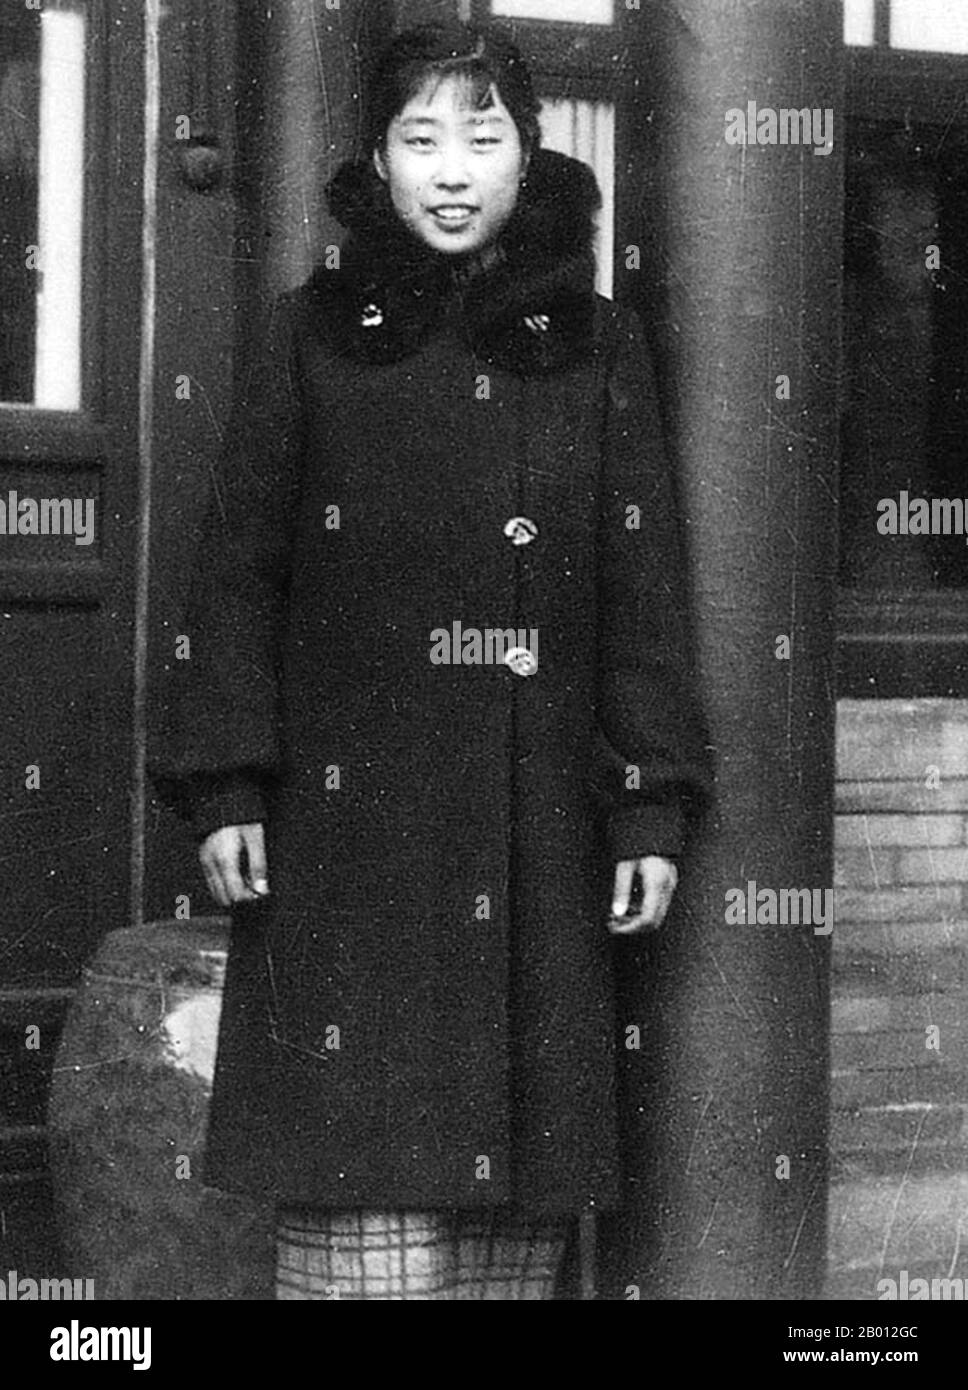 Chine : un jeune Wang Guangmei (1921-2006), première Dame de la République populaire de Chine (1959-1968). Wang Guangmei (26 septembre 1921 - 13 octobre 2006) était un homme politique, philanthrope et première dame chinois respecté, épouse de Liu Shaoqi, qui a été président de la République populaire de 1959 à 1968. Banque D'Images